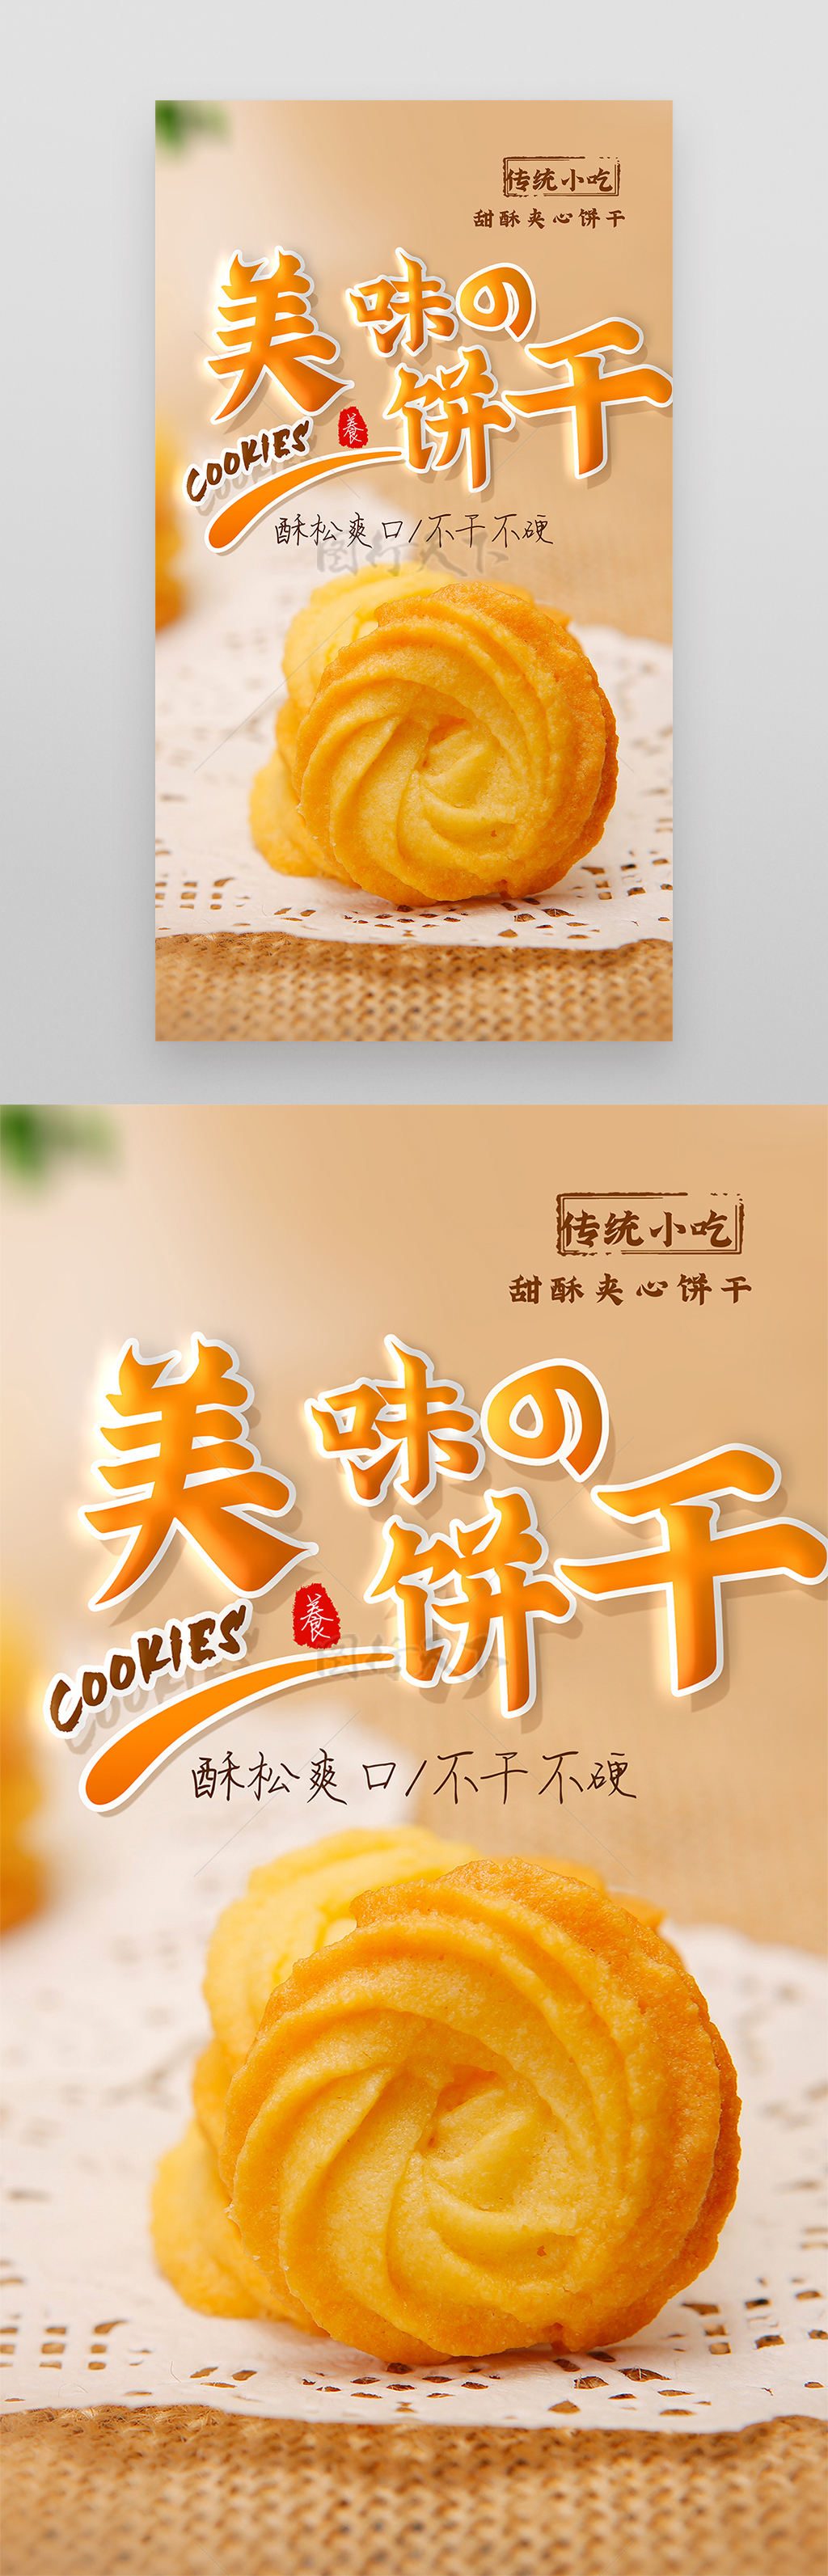 黄油曲奇饼干美食摄影图海报